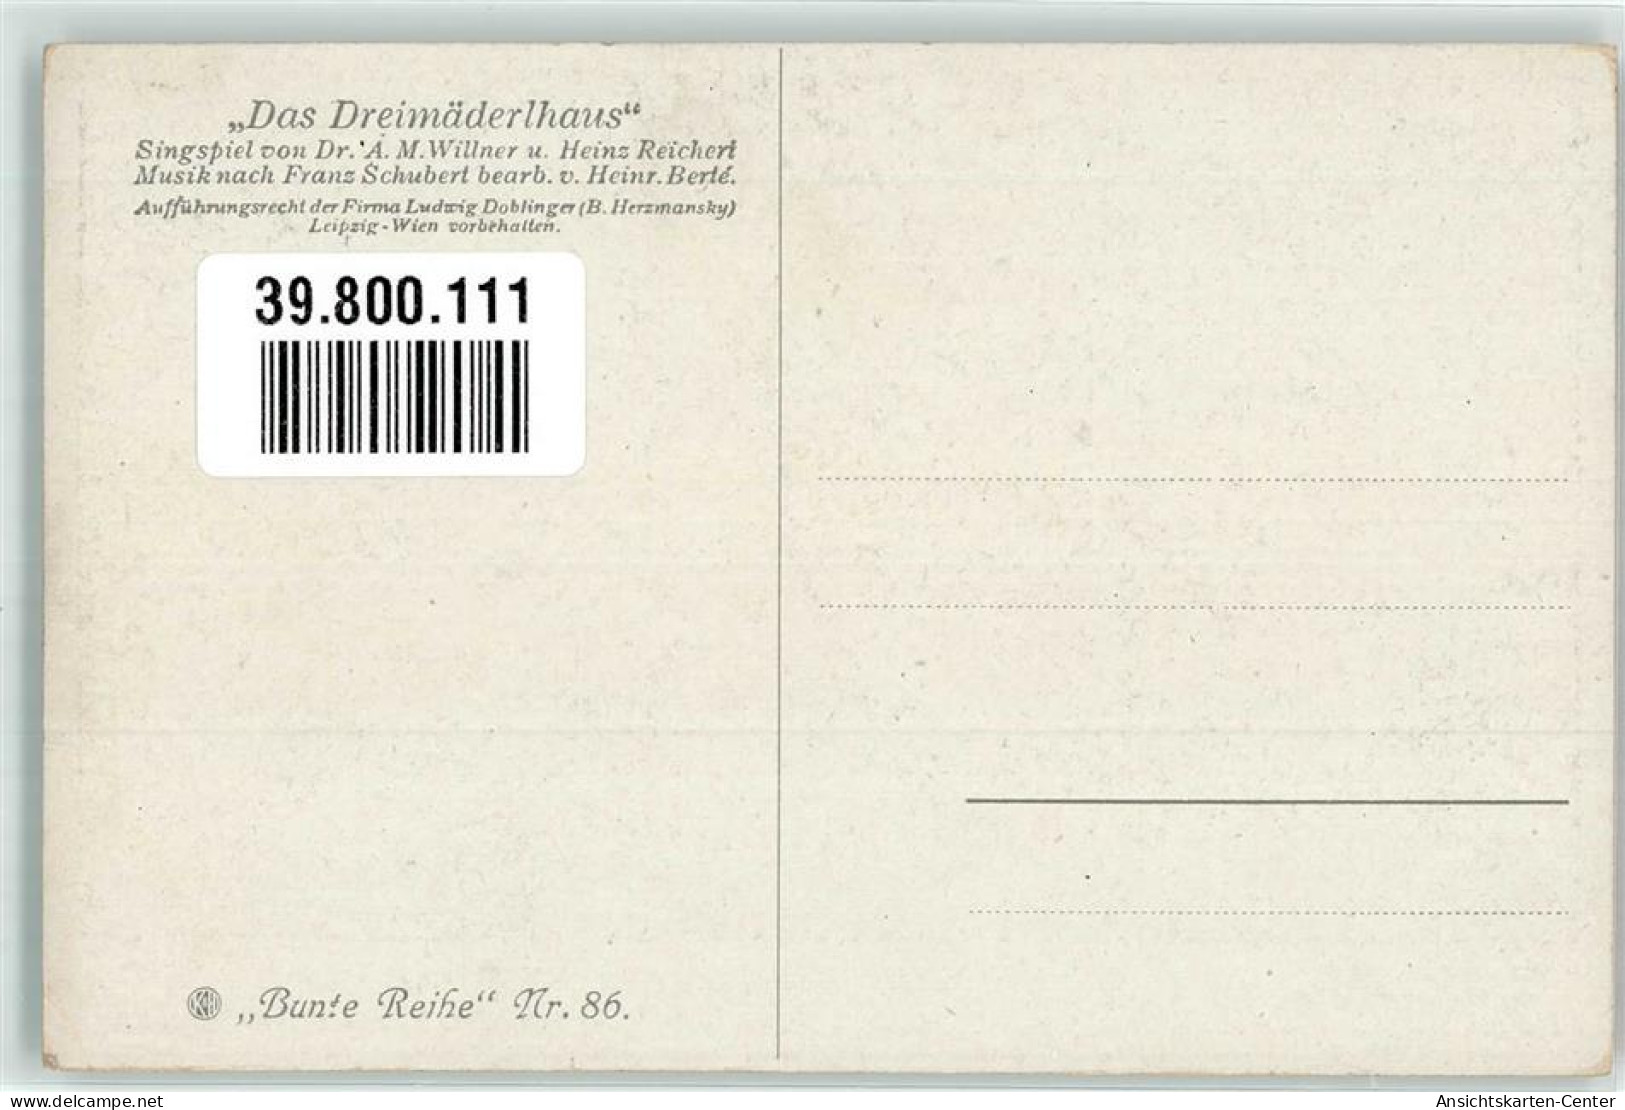 39800111 - Sign. Brock A. Dreimaederlhaus Singspiel Bunte Reihe Nr. 86 - Entertainers